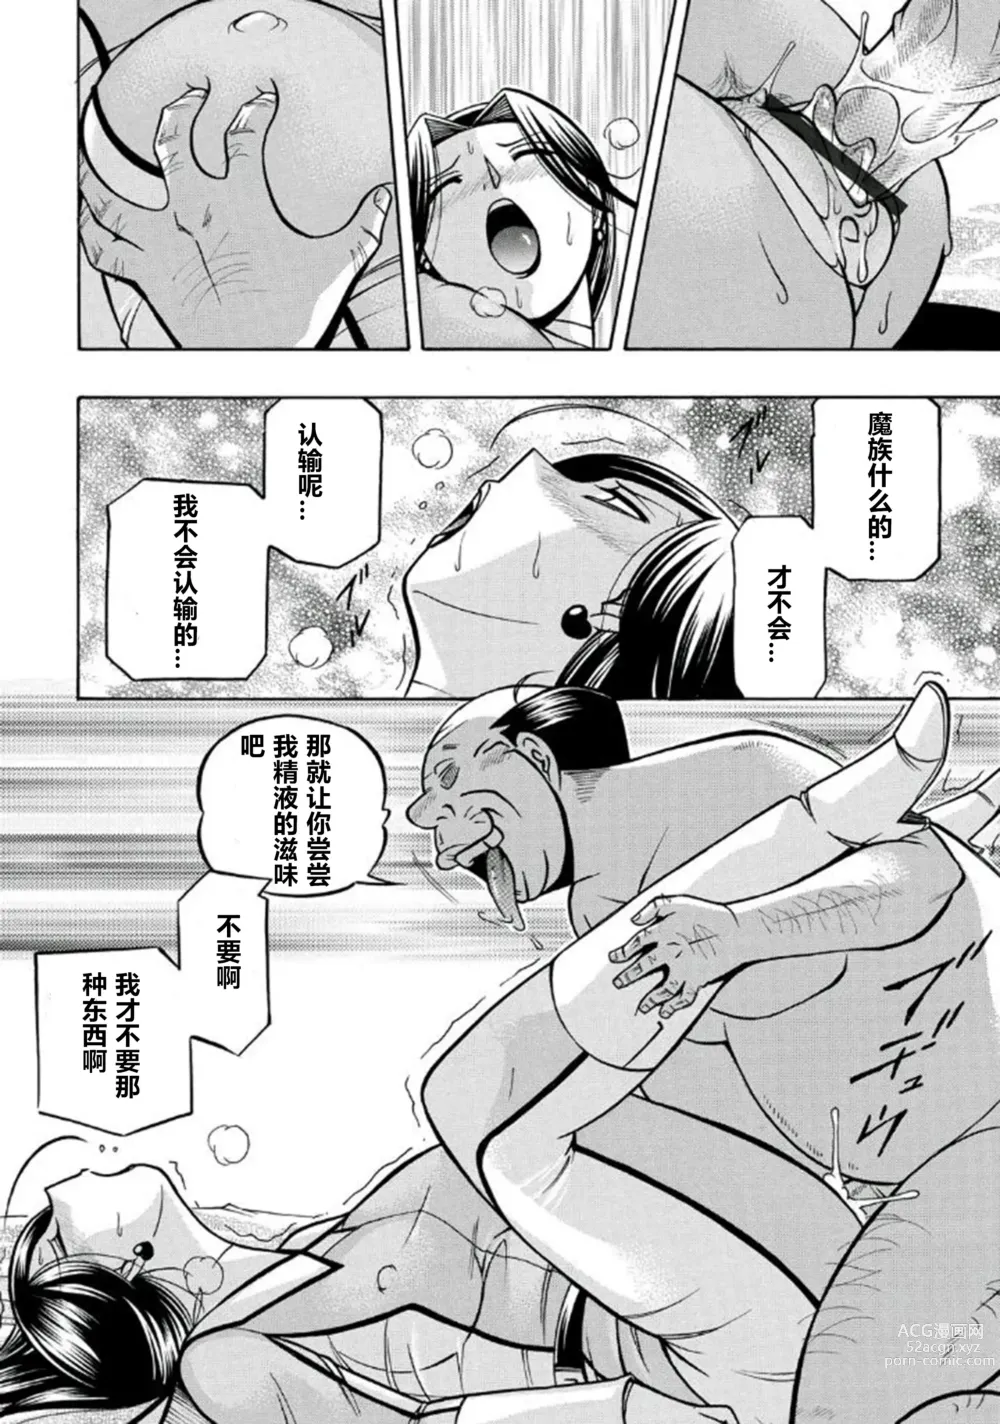 Page 35 of manga Pink Kuppuku - Pink Surrender